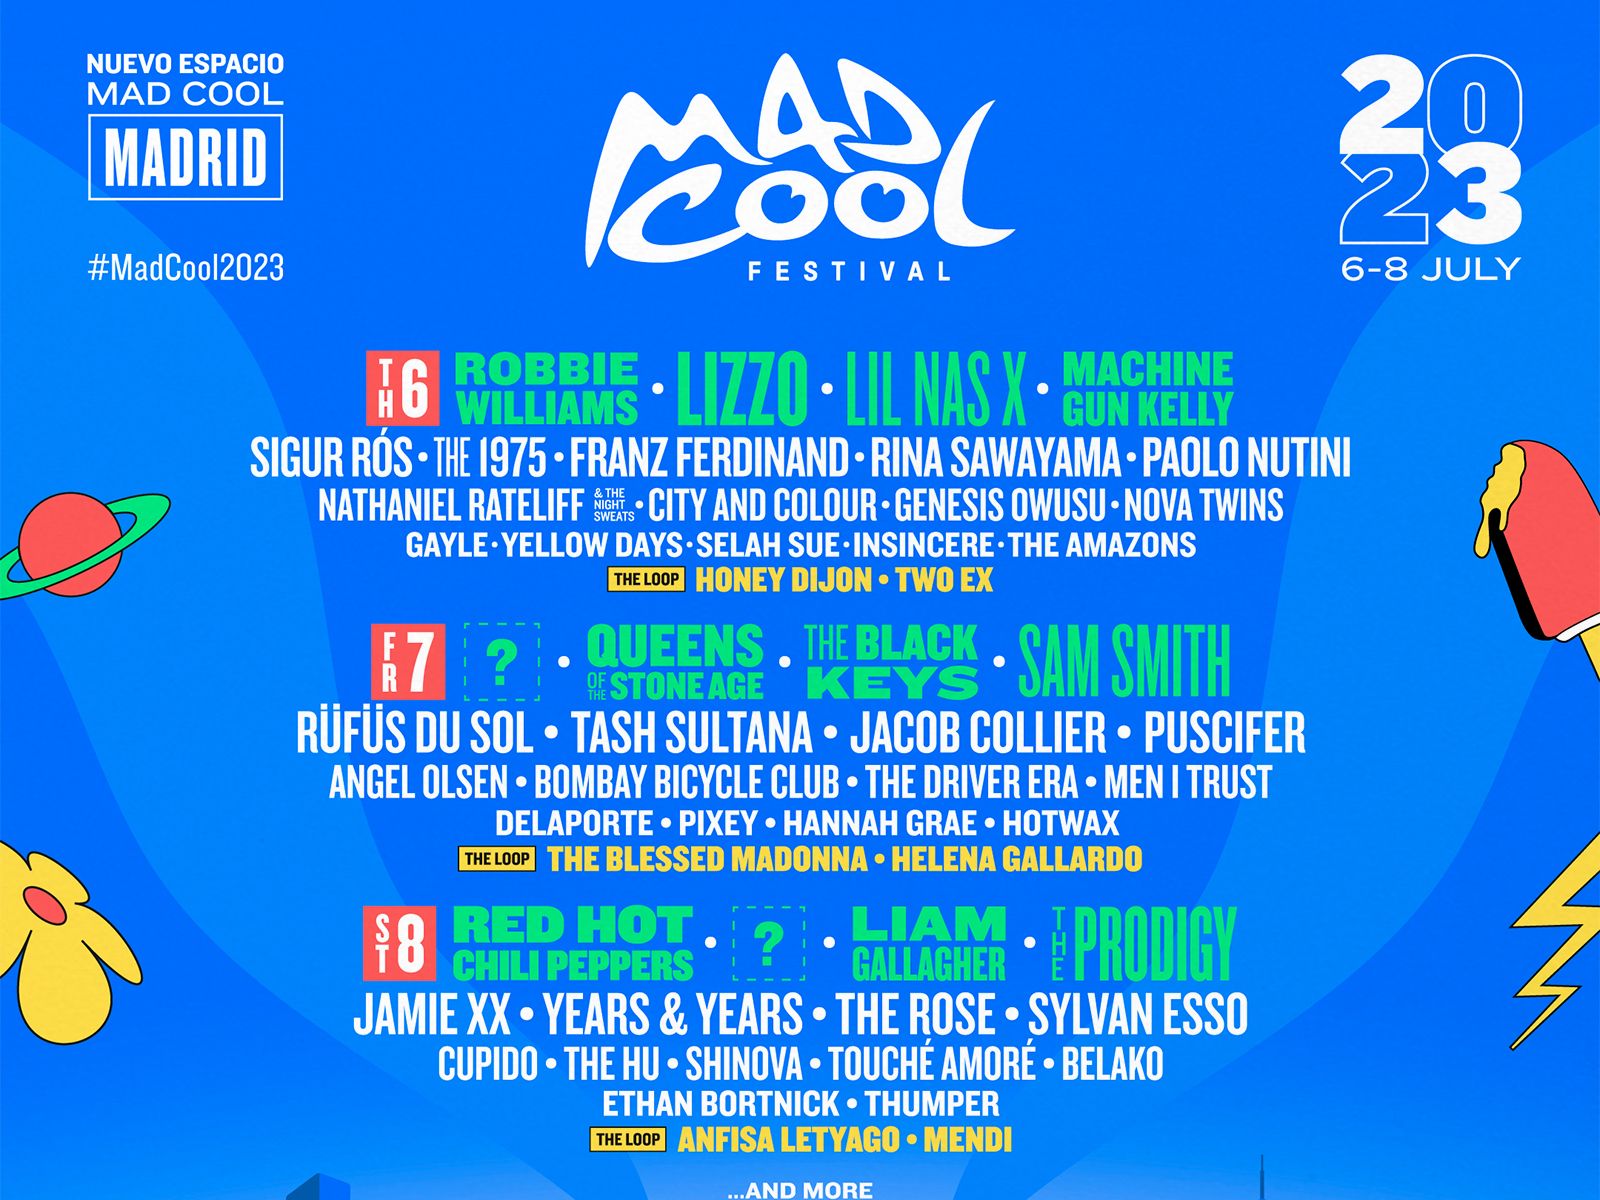 Mad Cool confirma los primeros artistas para su edición de 2023